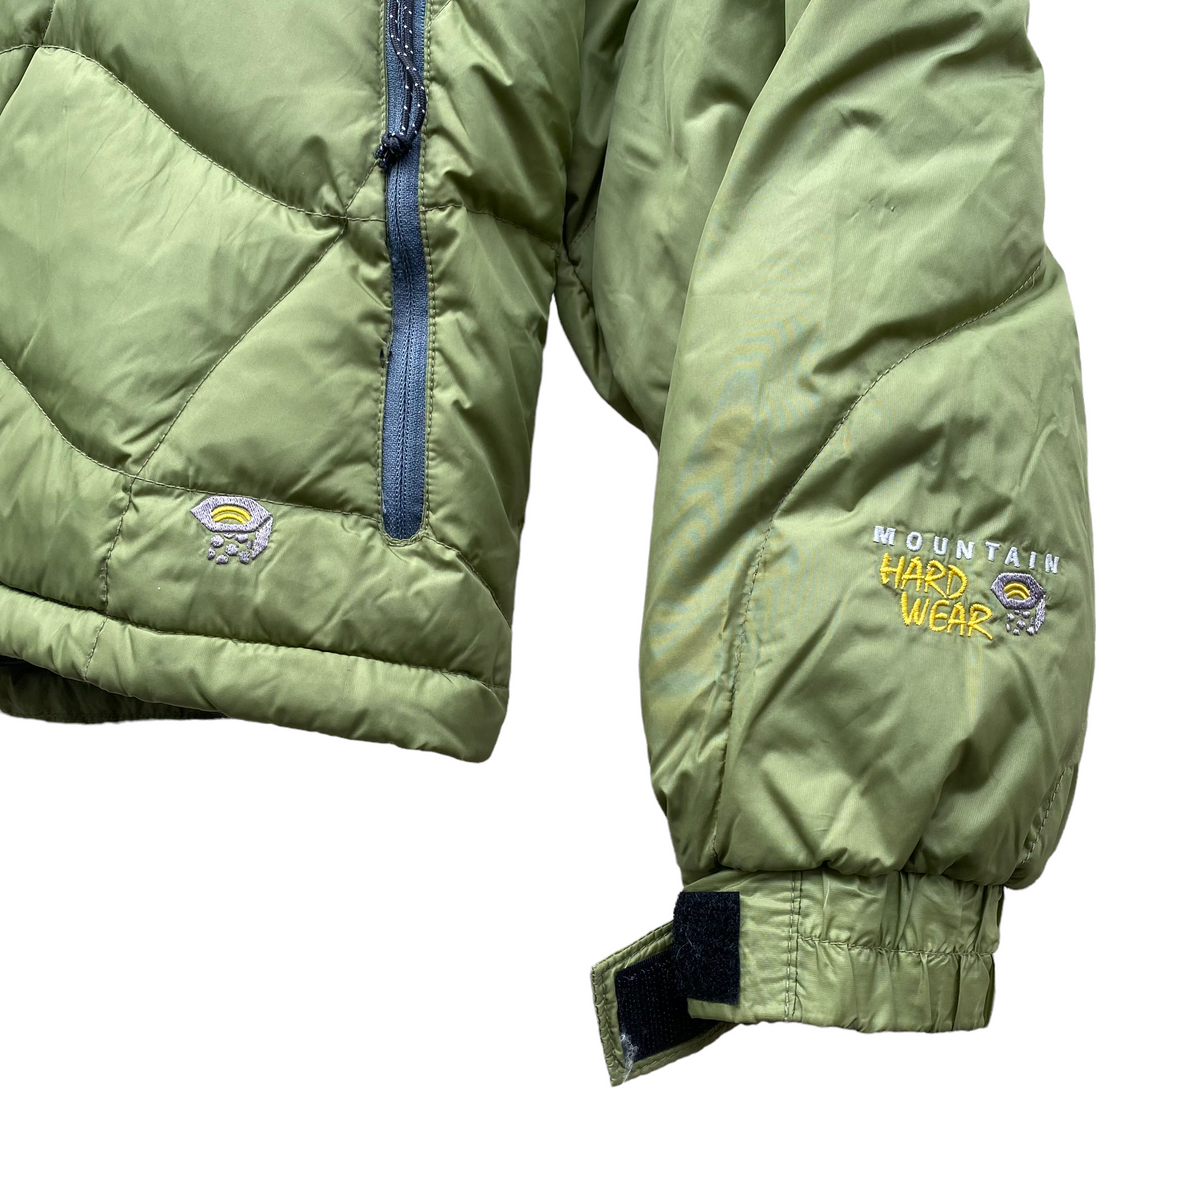 Y2k Mountain hardwear down jacket Small – Vintage Sponsor